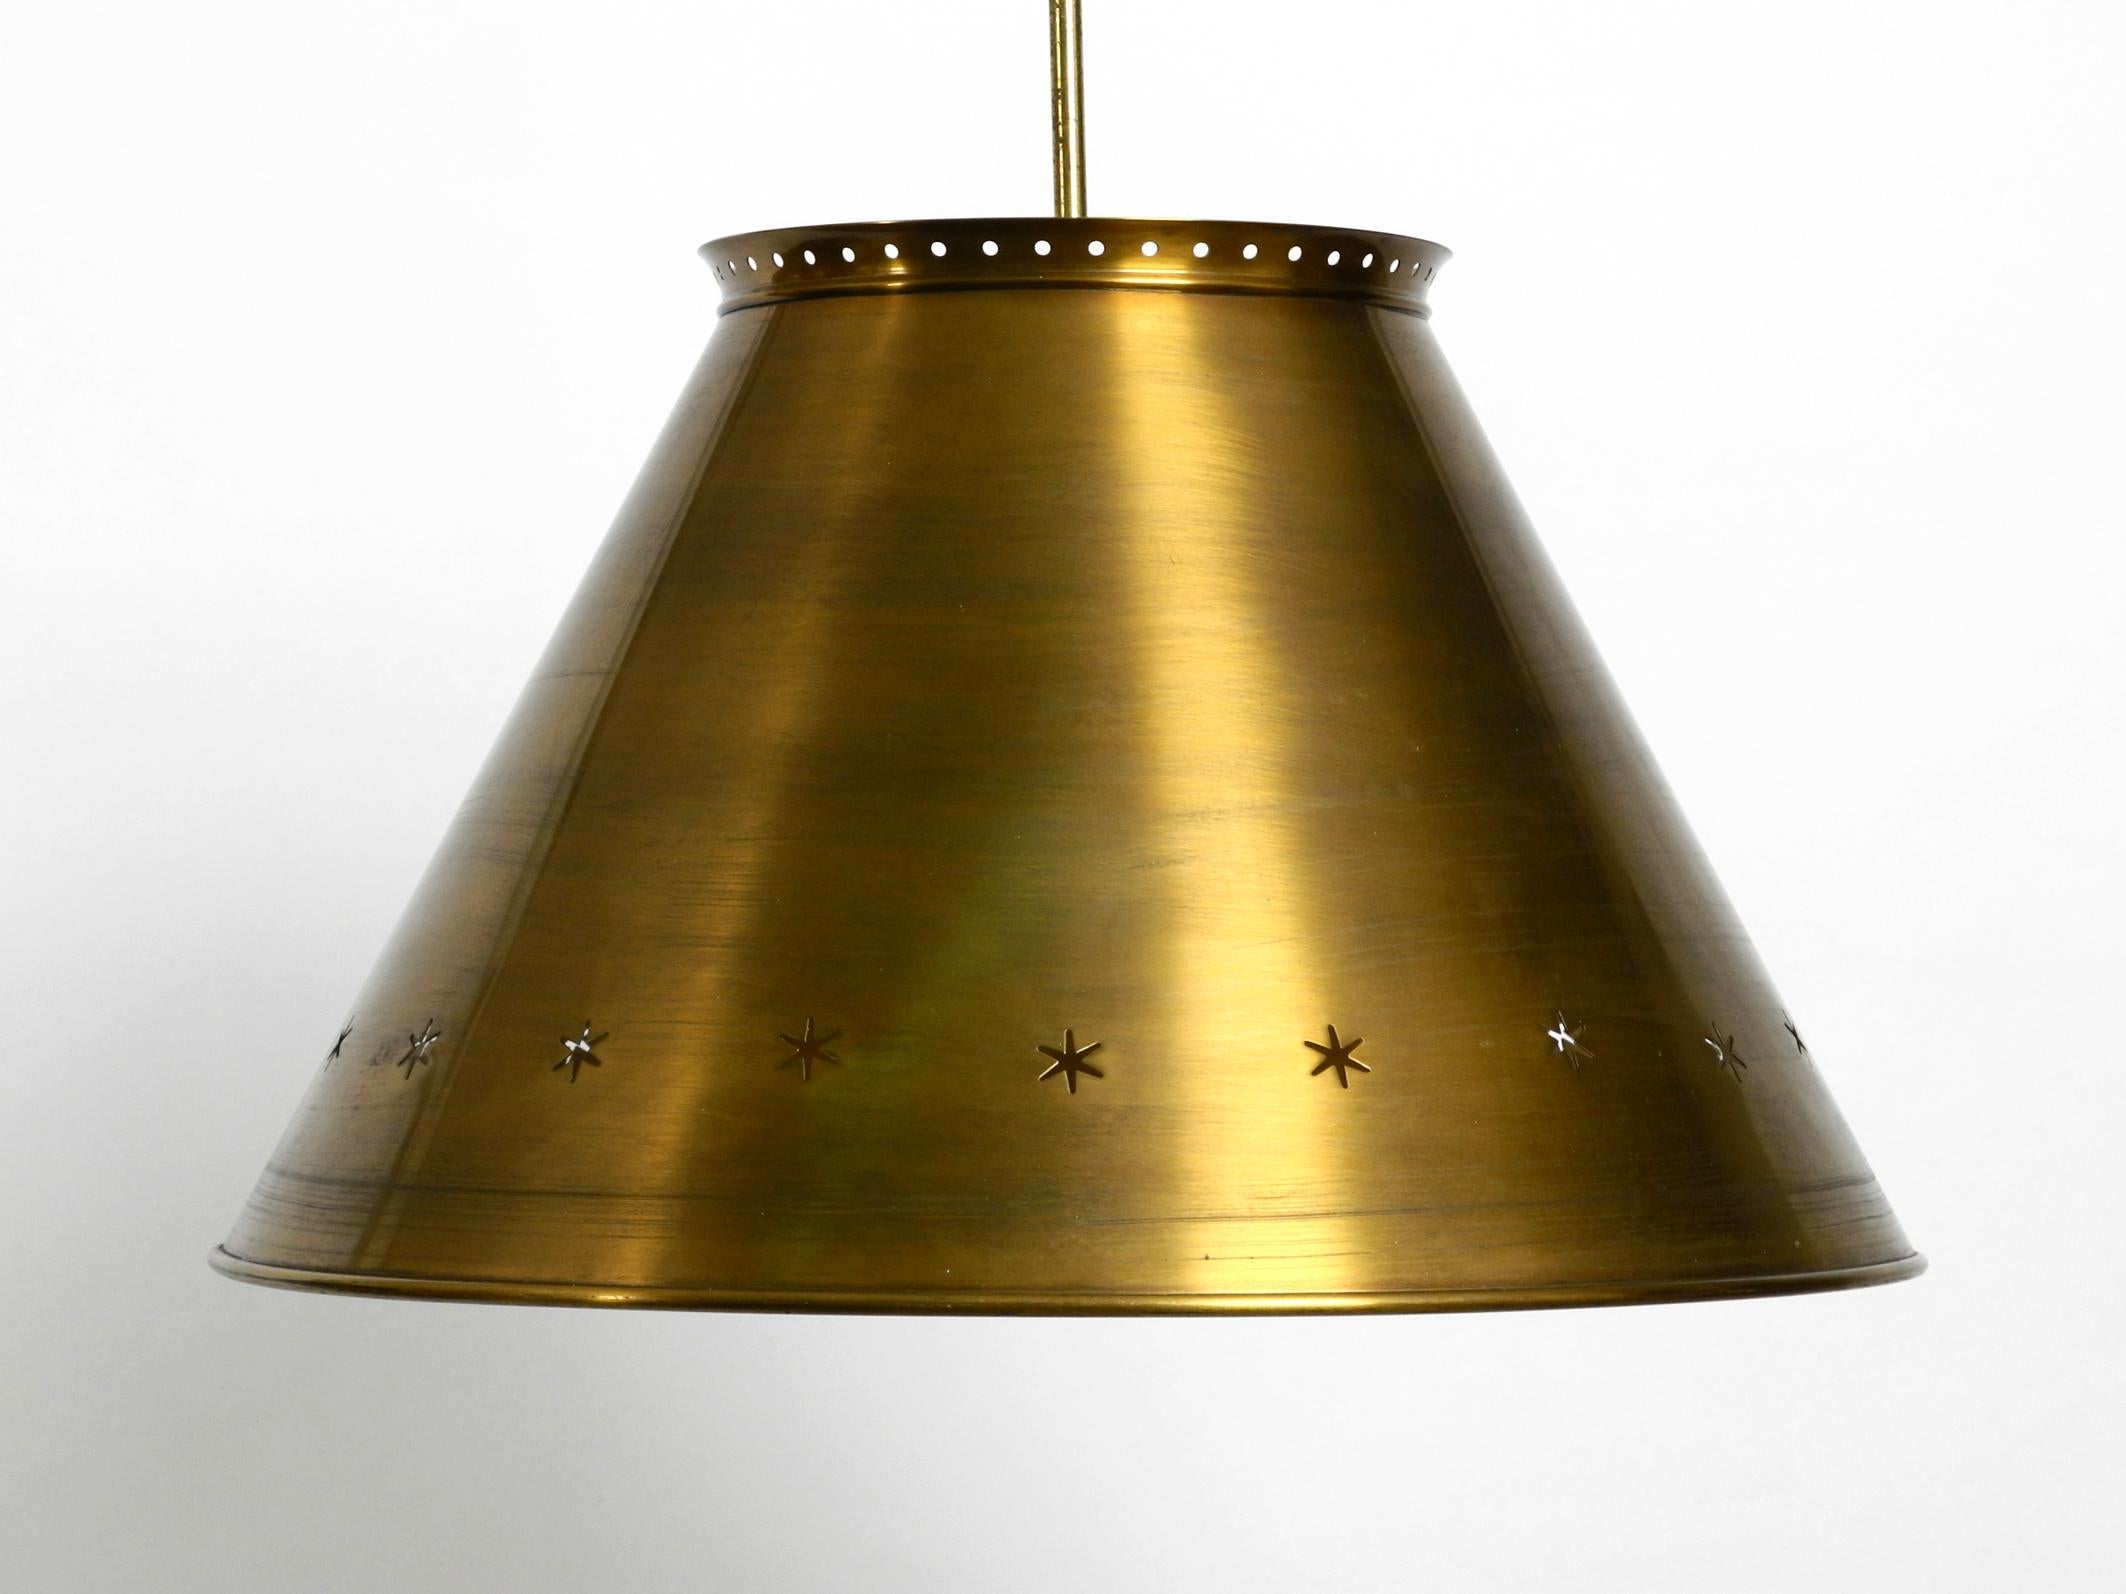 Tolle italienische XXL-Deckenlampe aus Messing aus der Mitte des Jahrhunderts.
Schönes minimalistisches Design mit vielen Details. Vollständig aus Messing gefertigt.
Die lange Stange und der Baldachin sind ebenfalls aus Messing.
Erzeugt sehr